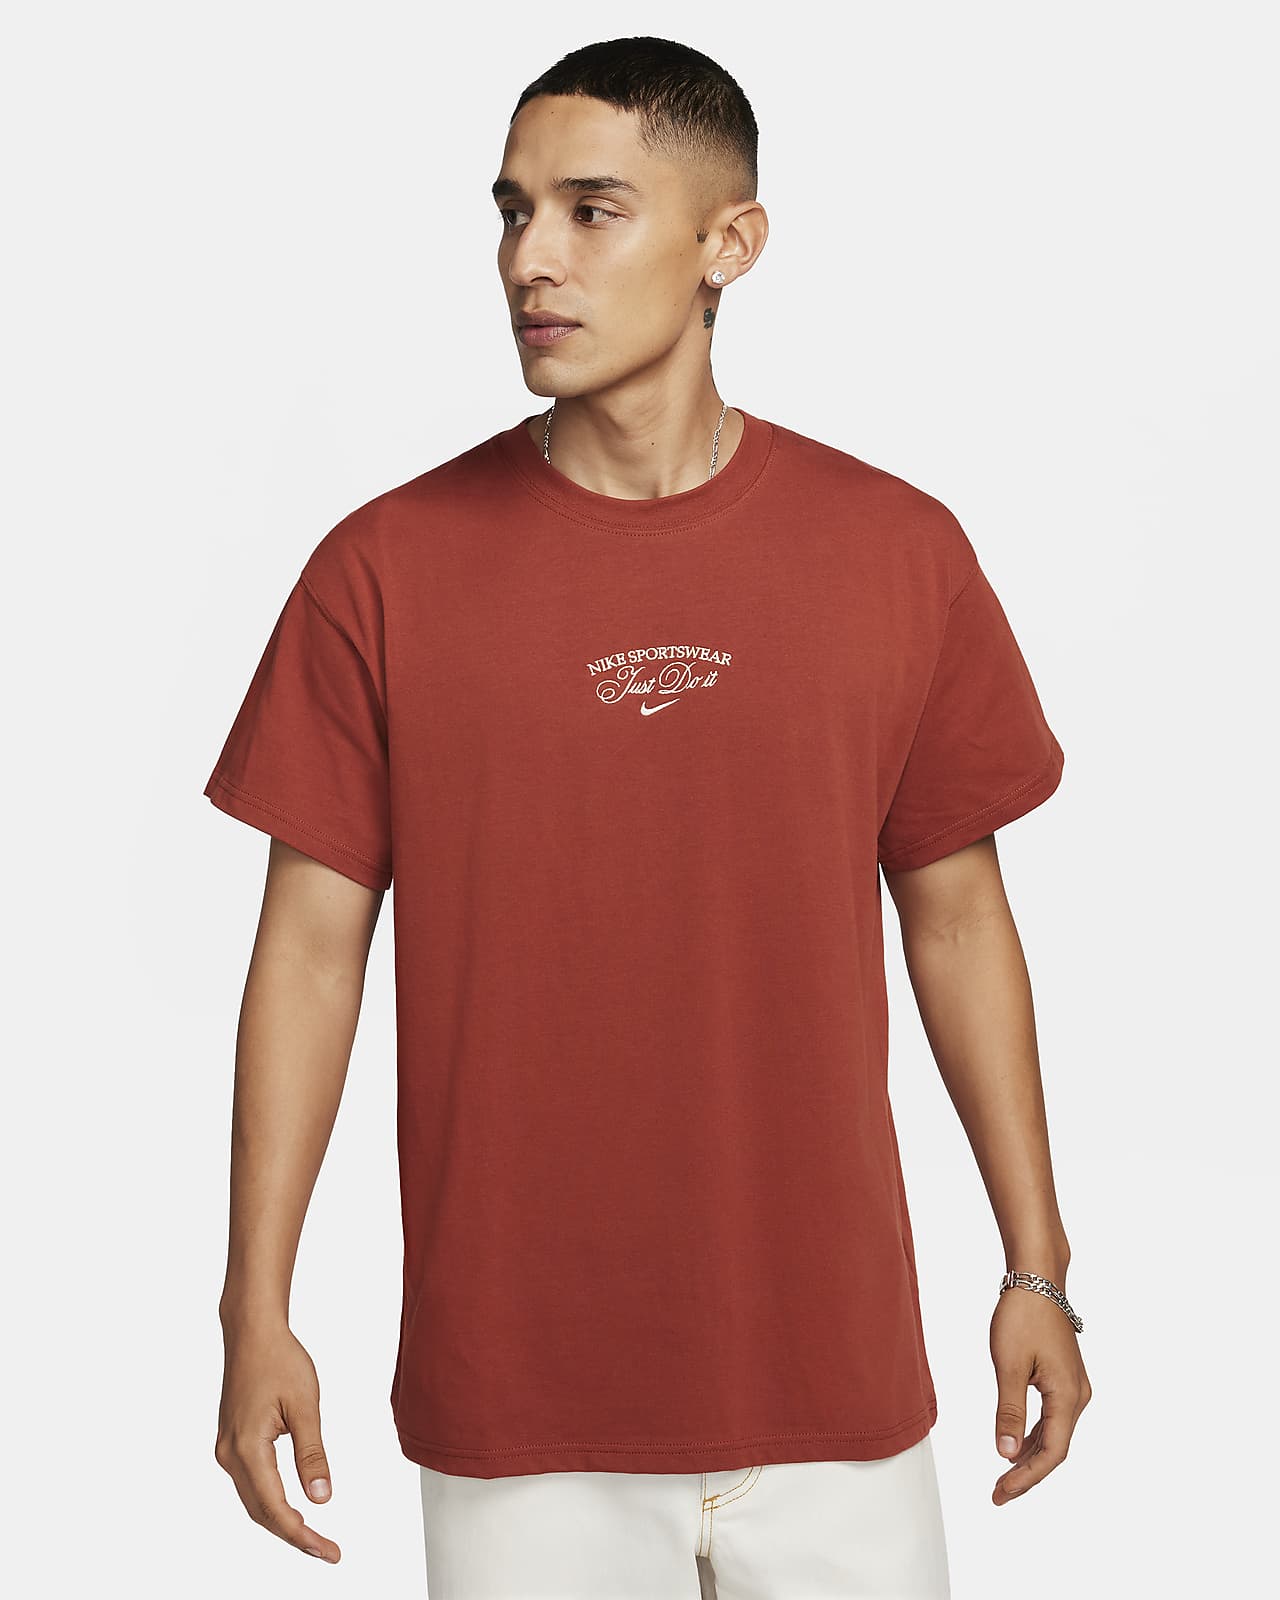 Nike Sportswear Men's T-Shirt. Nike DK